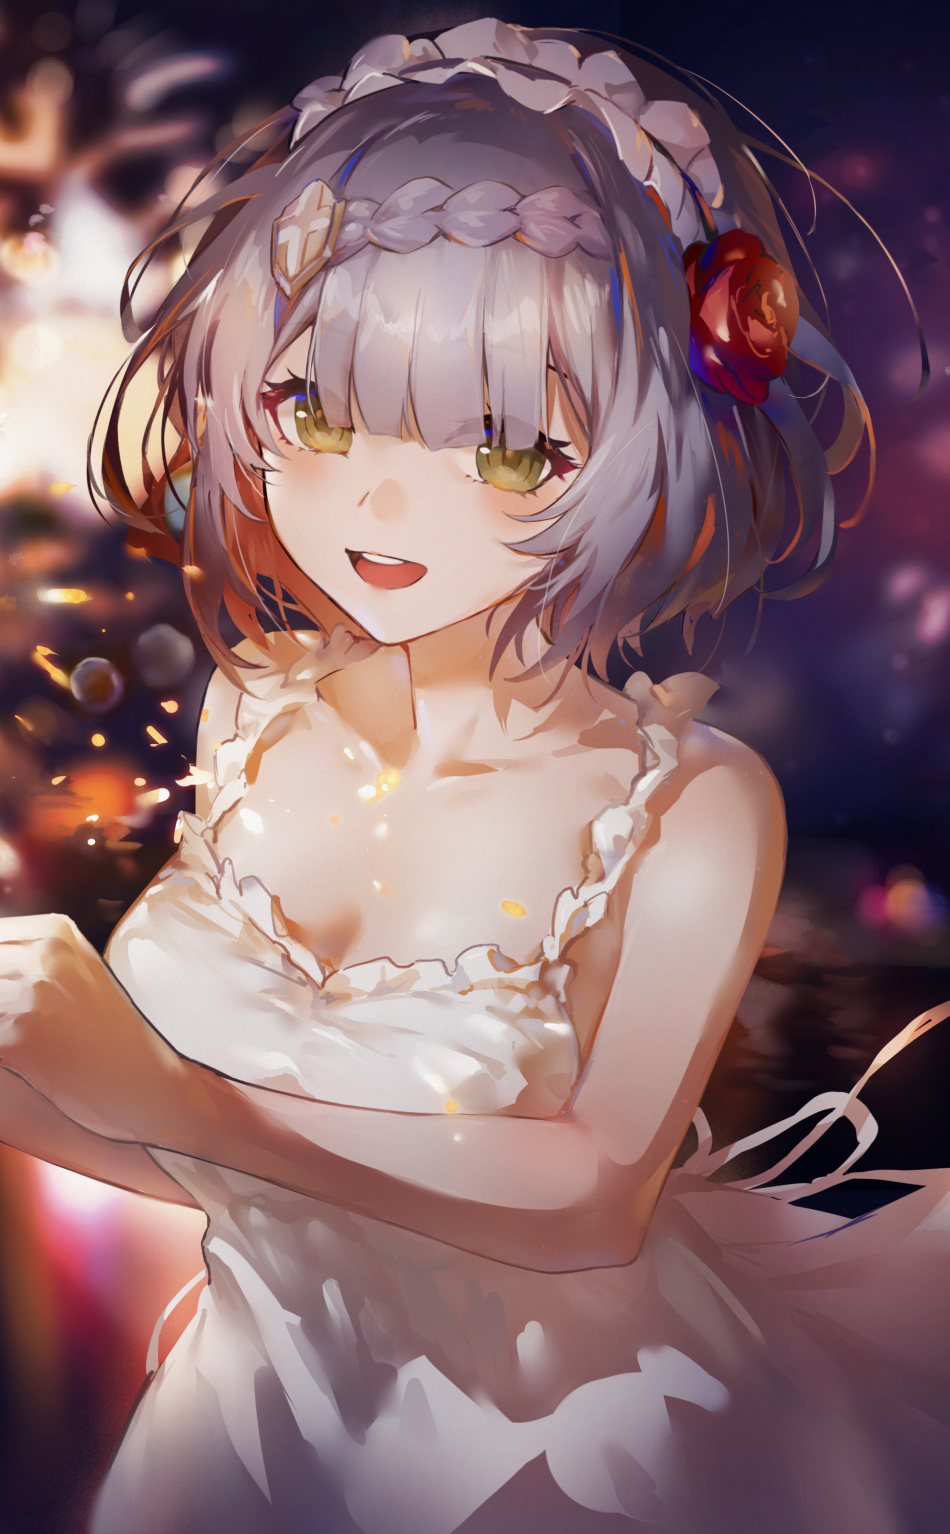 White dress, cute anime girl, art, 950x1534 wallpaper